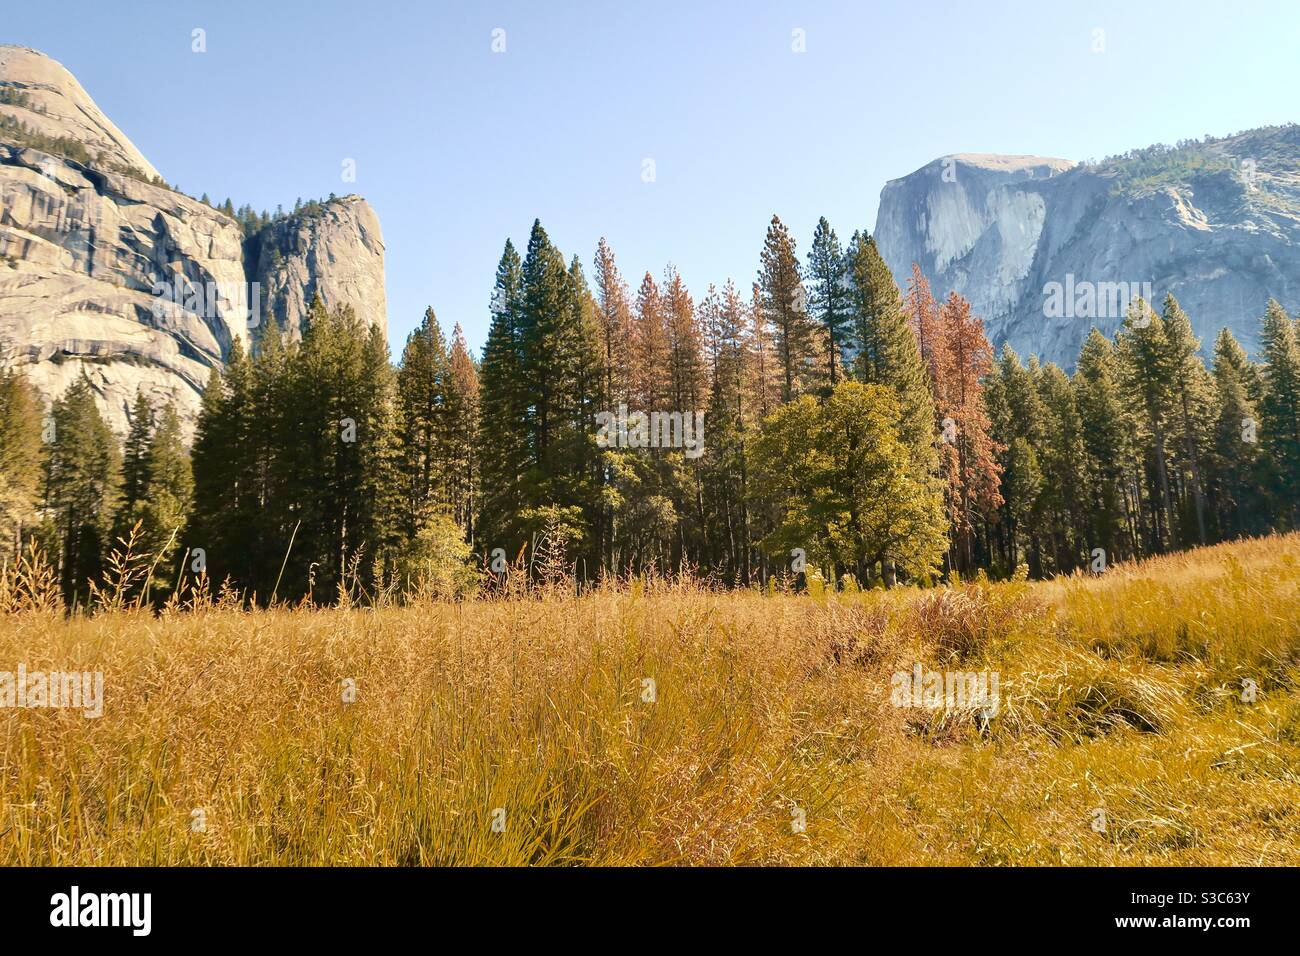 Automne doré lumière sur les herbes sauvages et les arbres entre deux énormes monolithes de granit dans la vallée de la rivière Merced, parc national de Yosemite en Californie, États-Unis. Automne 2019. Banque D'Images